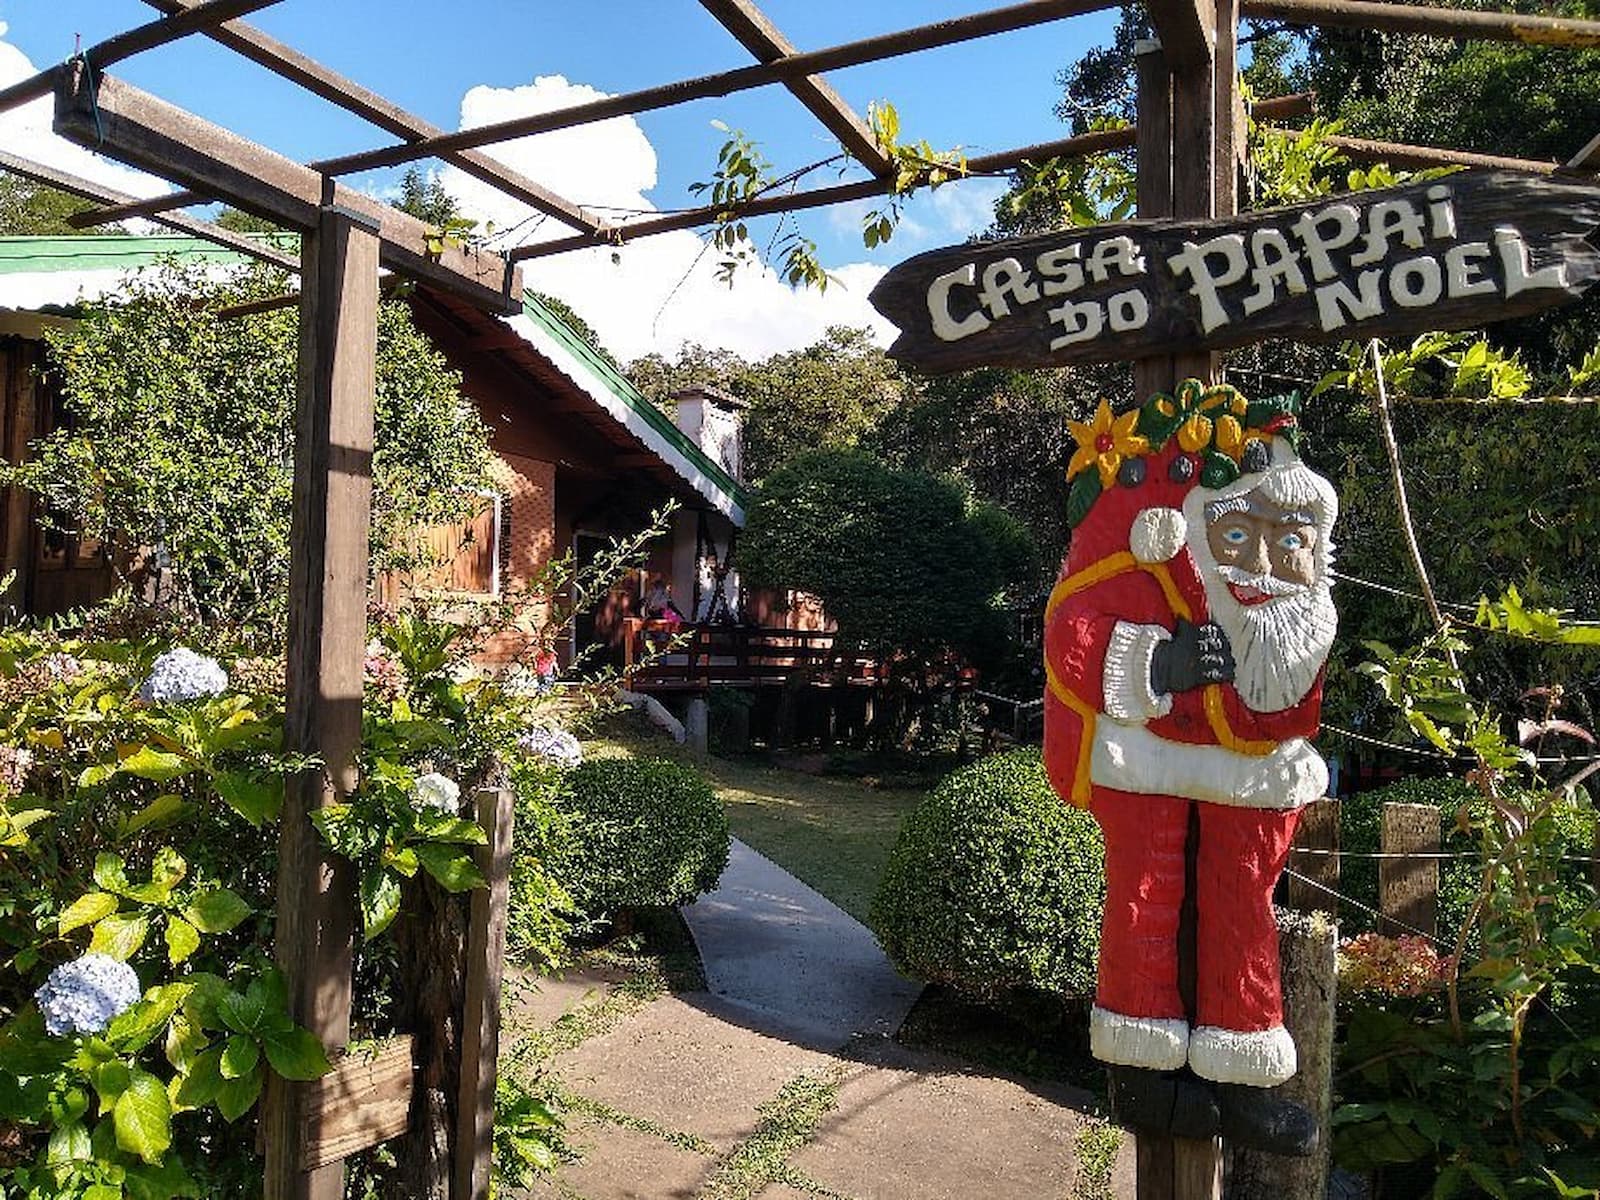 Parque da Floresta Encantada - Casa do Papai Noel